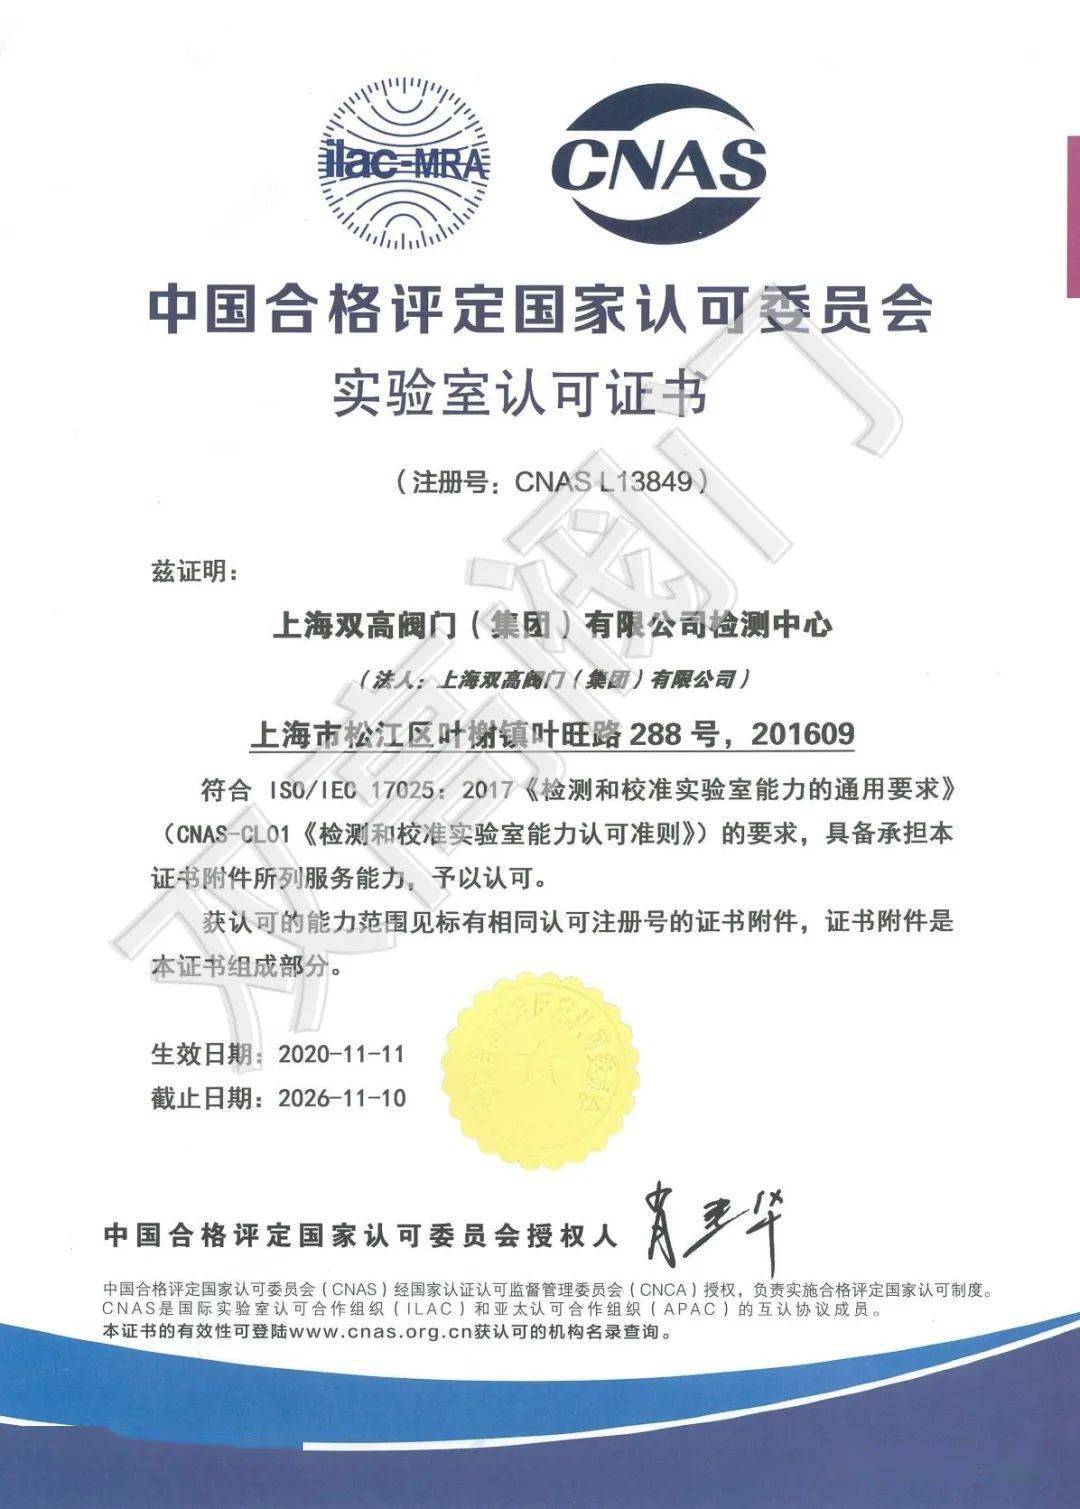 双高阀门成功获得cnas国家级实验室资格认证_手机搜狐网